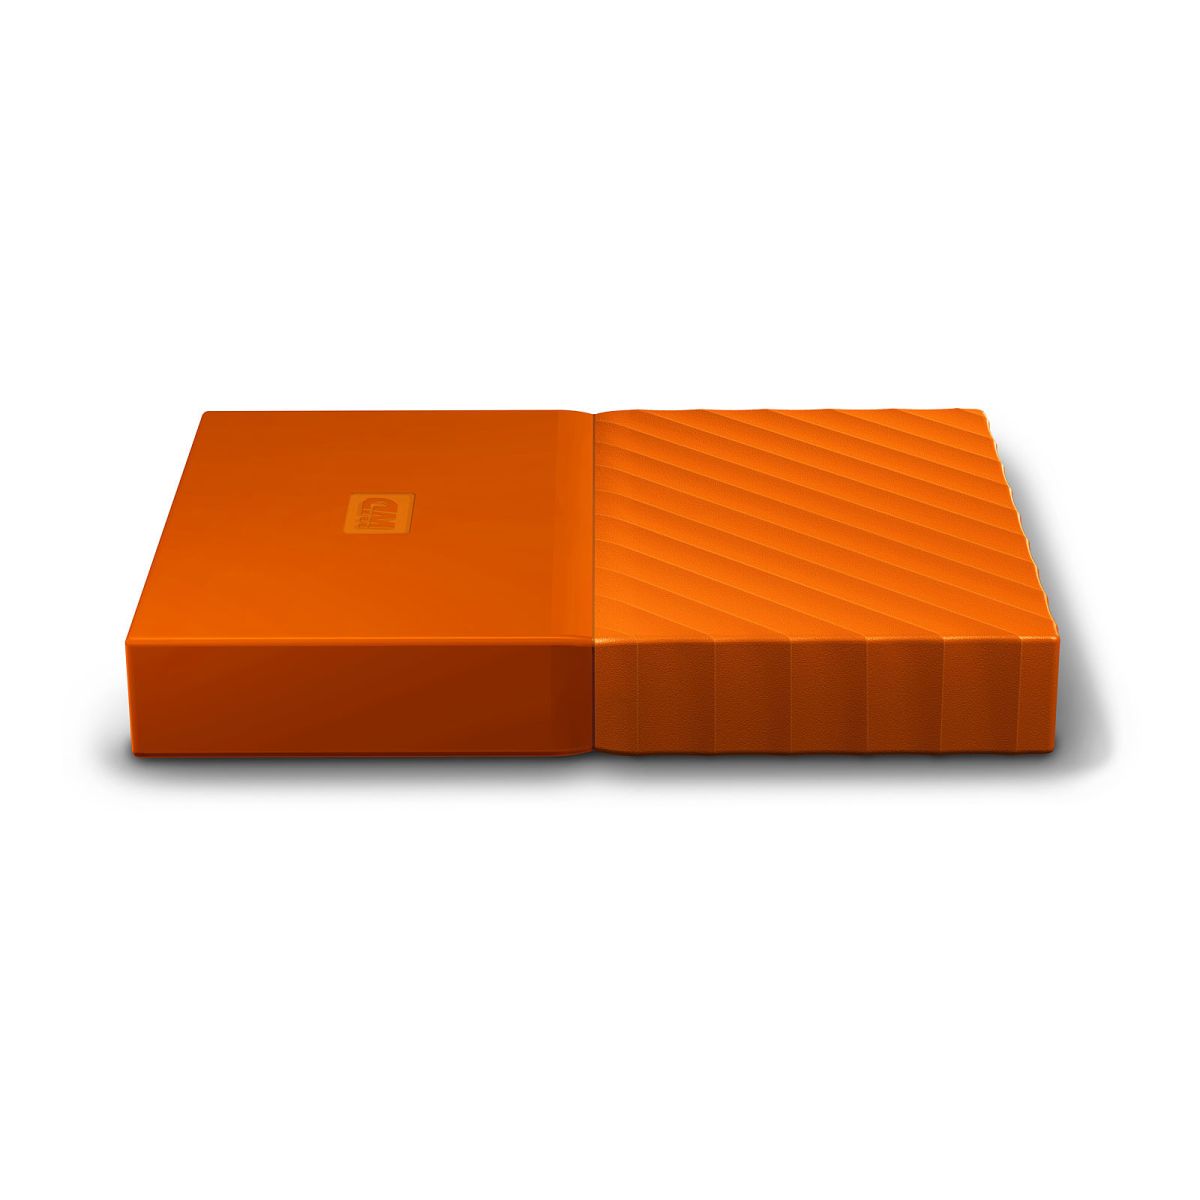 WD Mypassport 2To disque dur externe orange